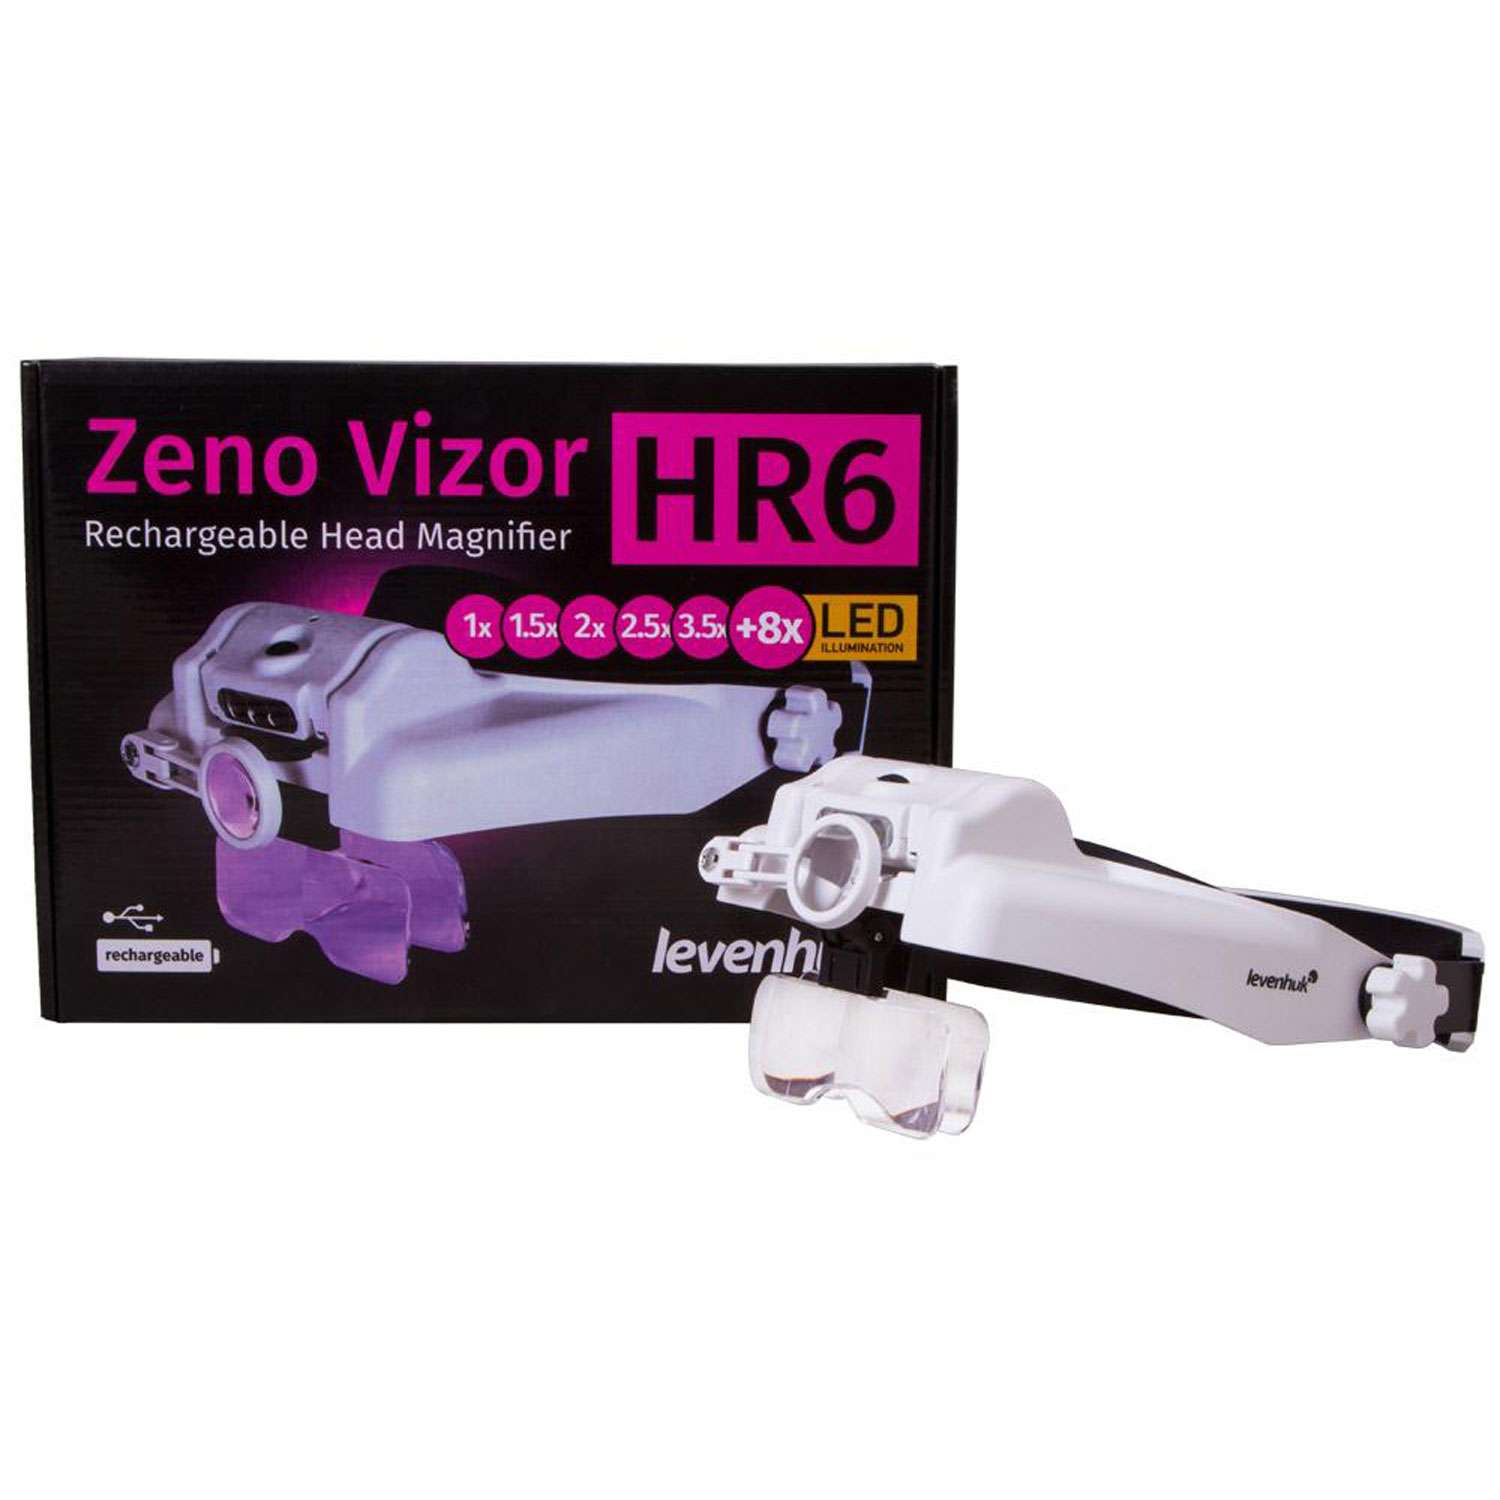 Лупа налобная Levenhuk Zeno Vizor HR6 с аккумулятором - фото 10